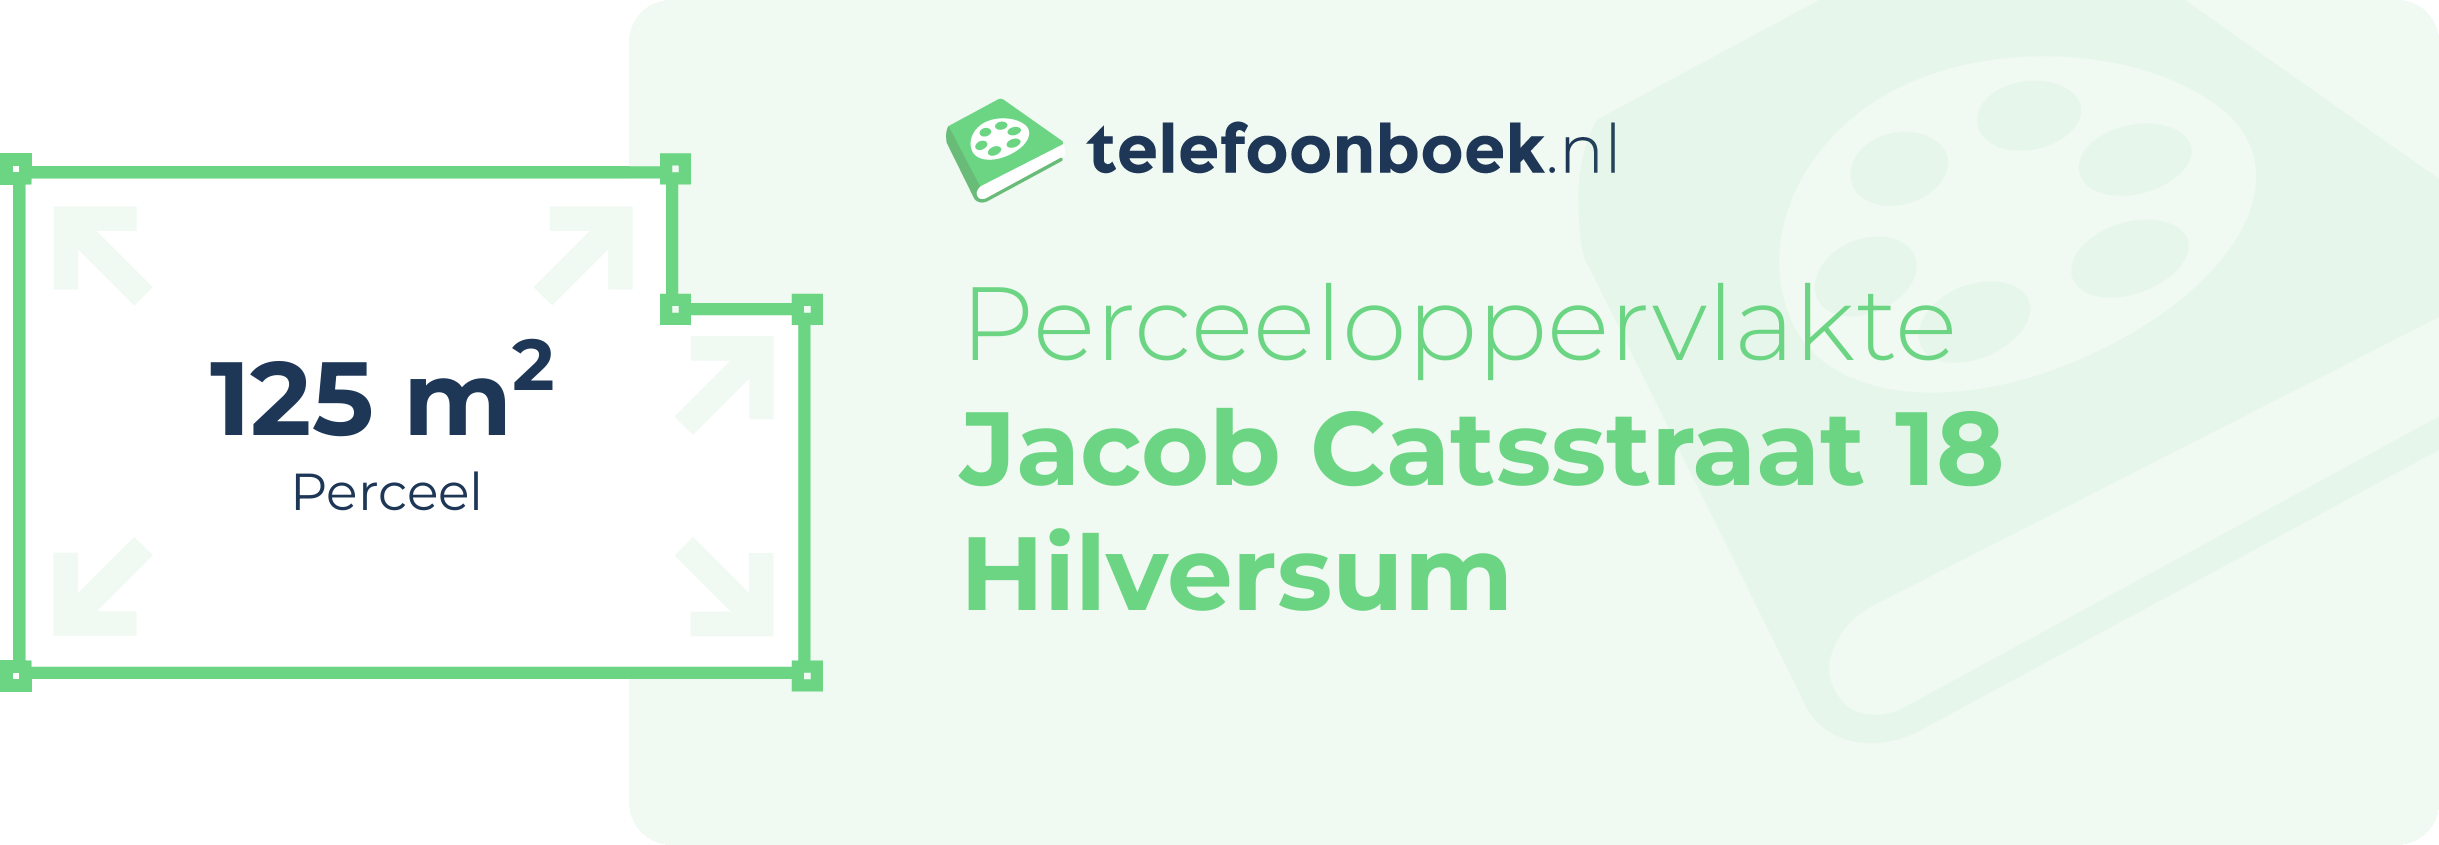 Perceeloppervlakte Jacob Catsstraat 18 Hilversum